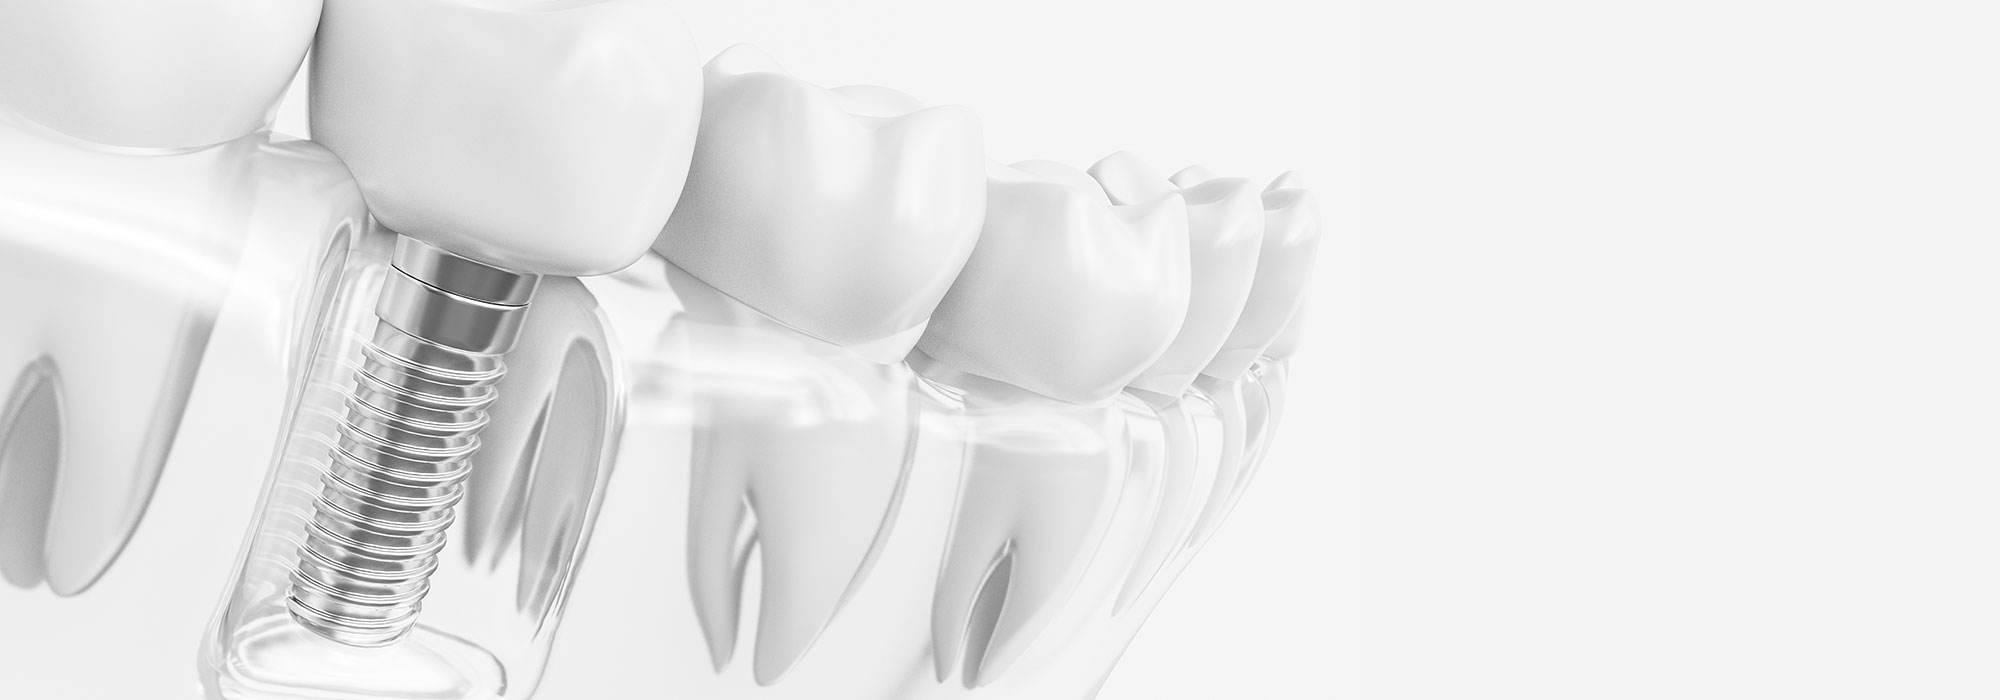 「第2の永久歯」として機能するインプラント